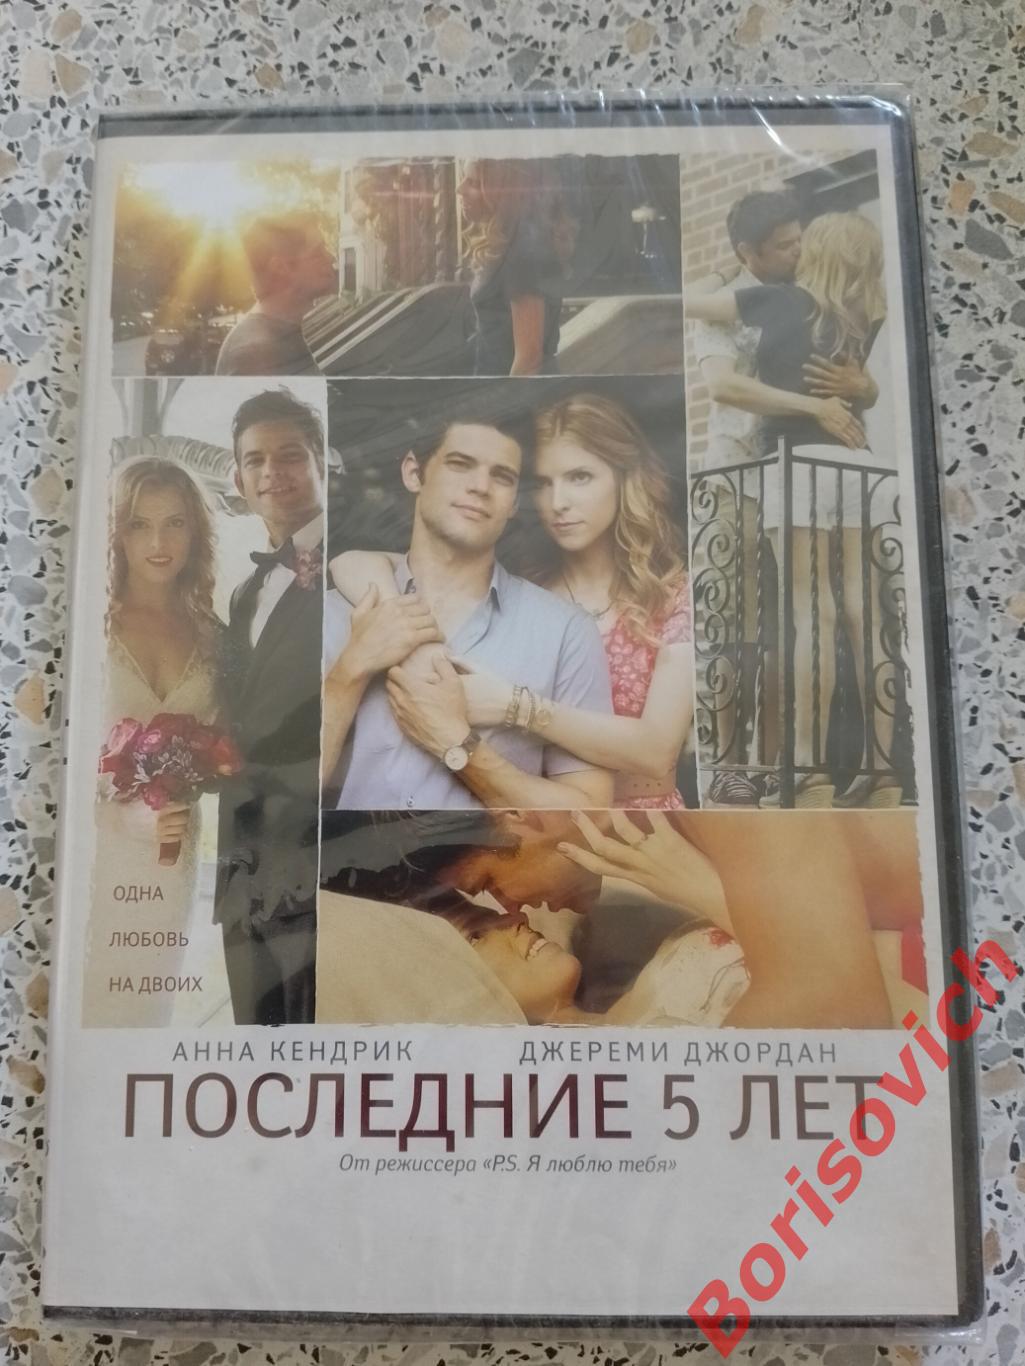 DVD ПОСЛЕДНИЕ 5 ЛЕТ Музыкальная романтическая комедия о любви